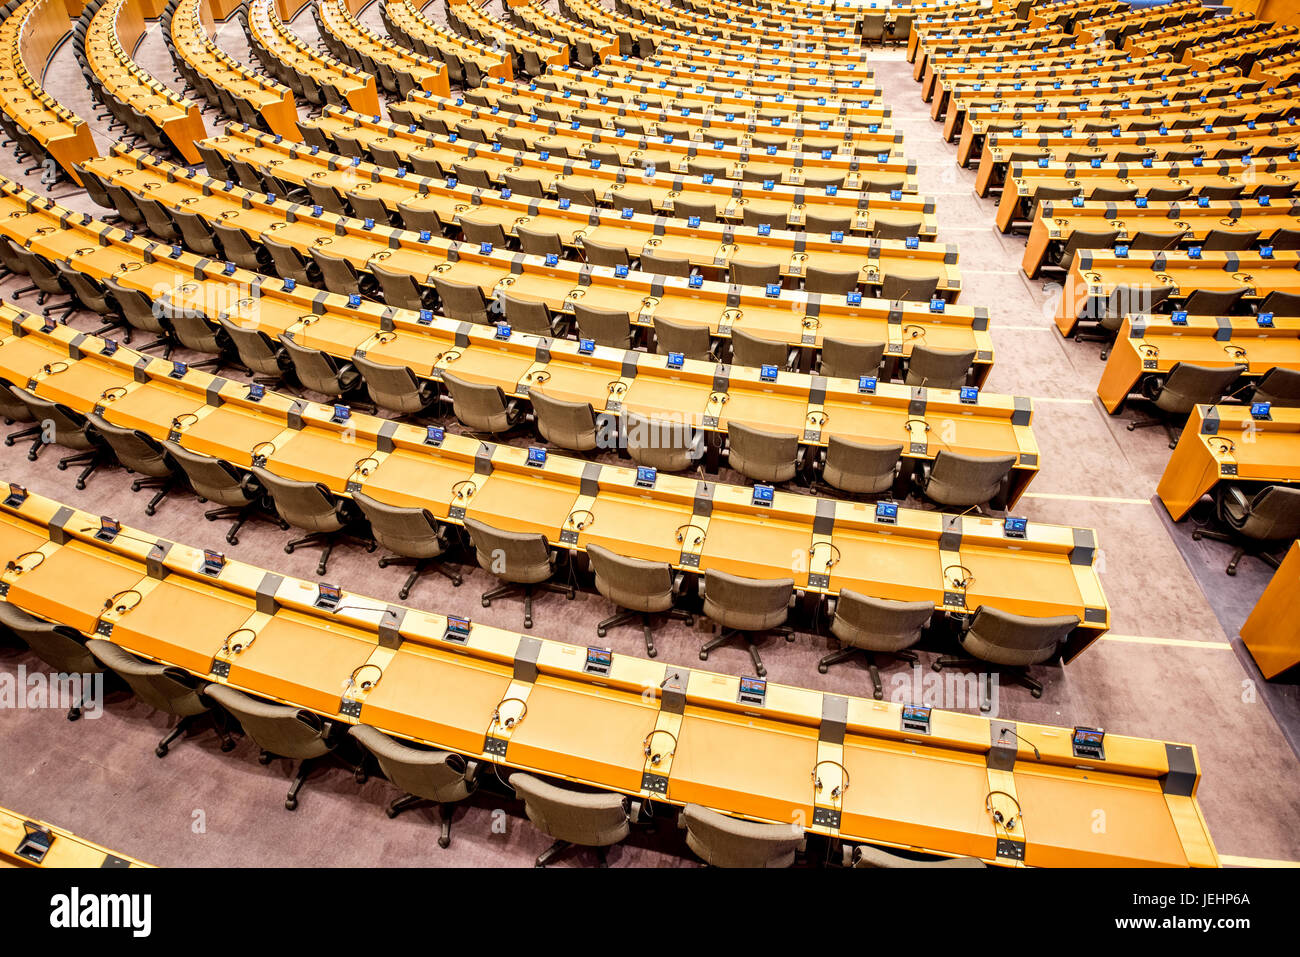 European parliament interior Stock Photo